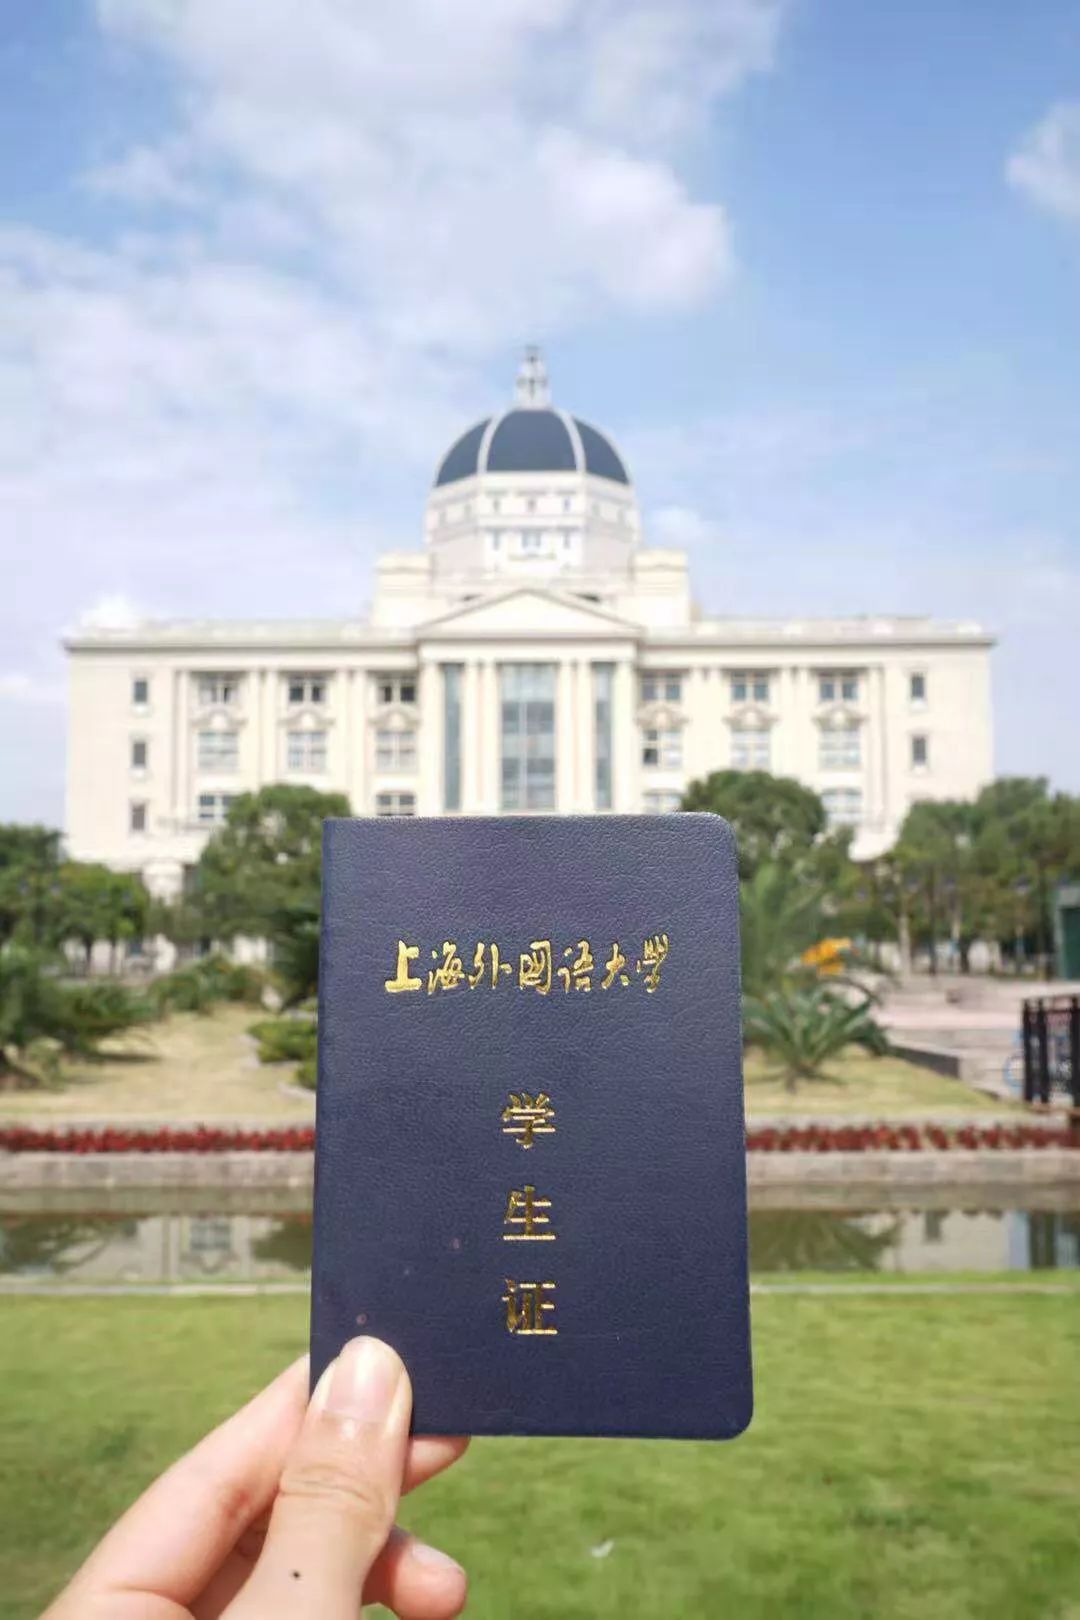 大学华东师范大学同济大学上海交通大学复旦大学你的学生证还保留着吗